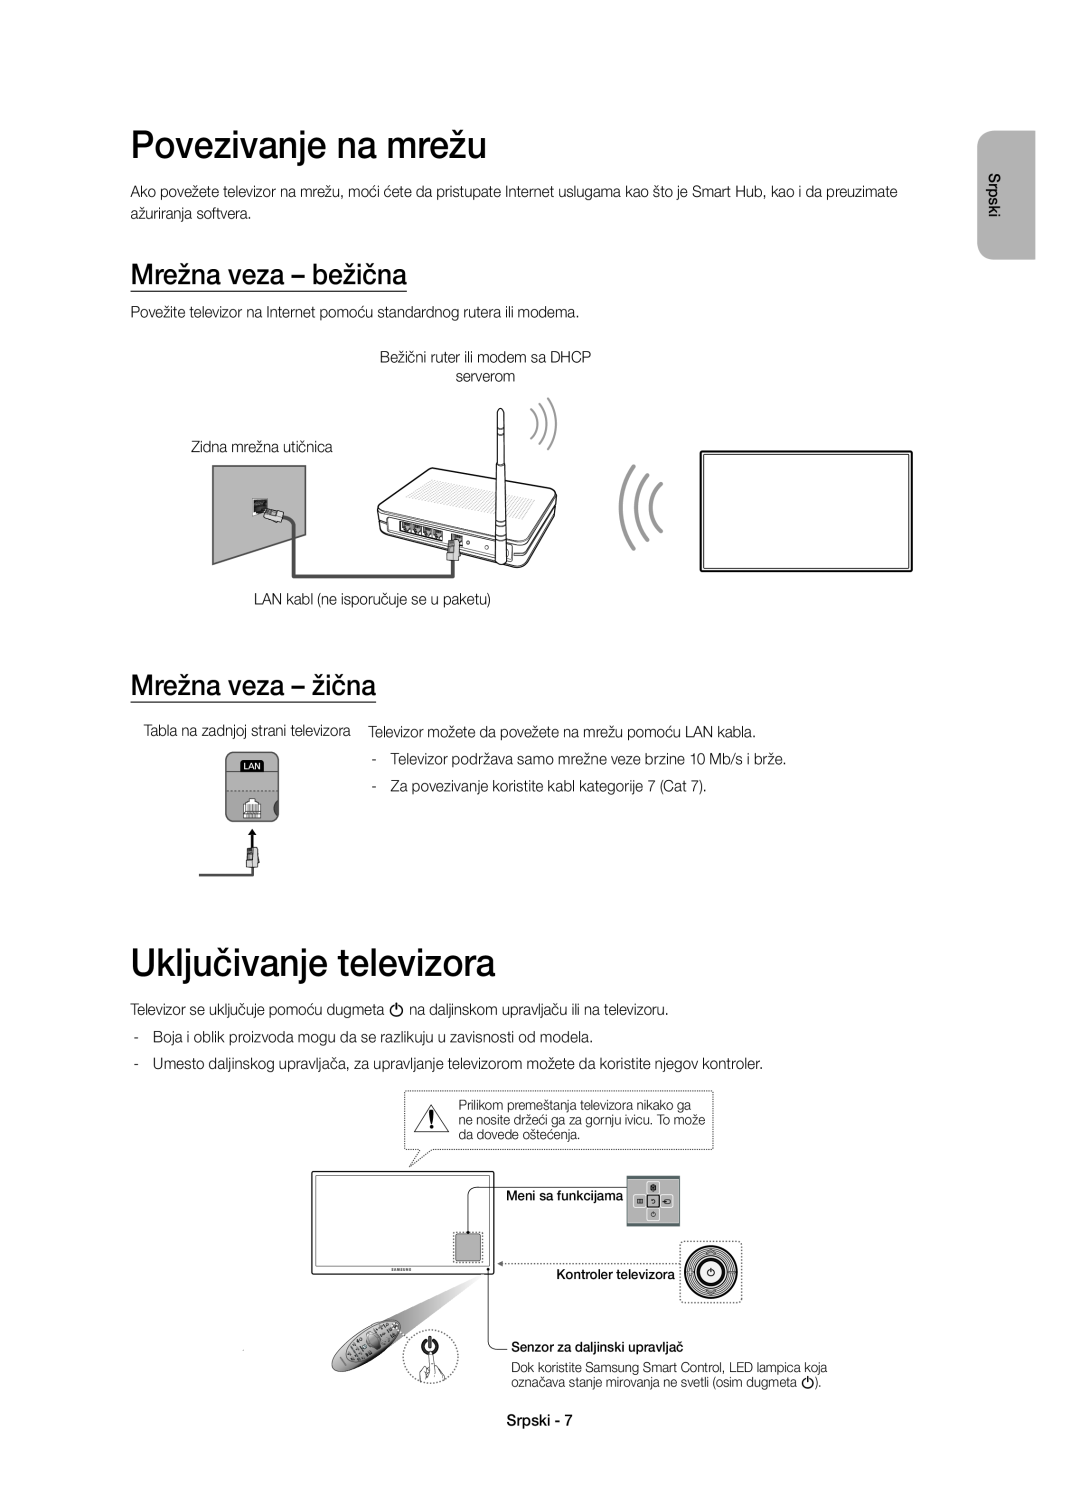 Samsung UE32H6410SSXZG manual Povezivanje na mrežu, Mrežna veza - bežična, Mrežna veza - žična, Uključivanje televizora 